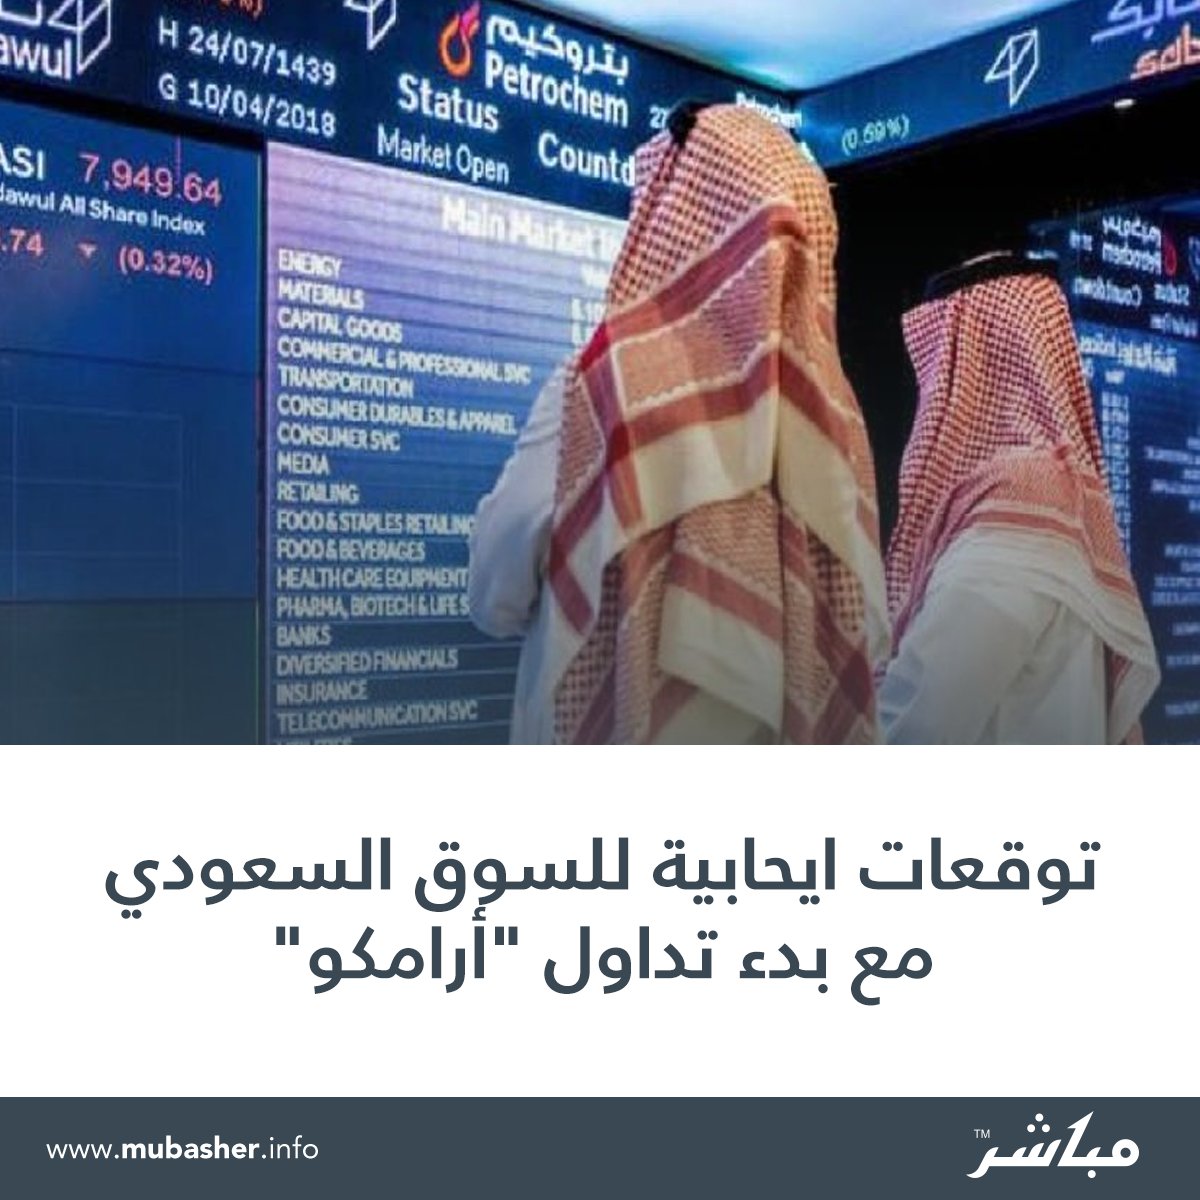 موقع مباشر السعودية توقعات ايحابية للسوق السعودي مع بدء تداول